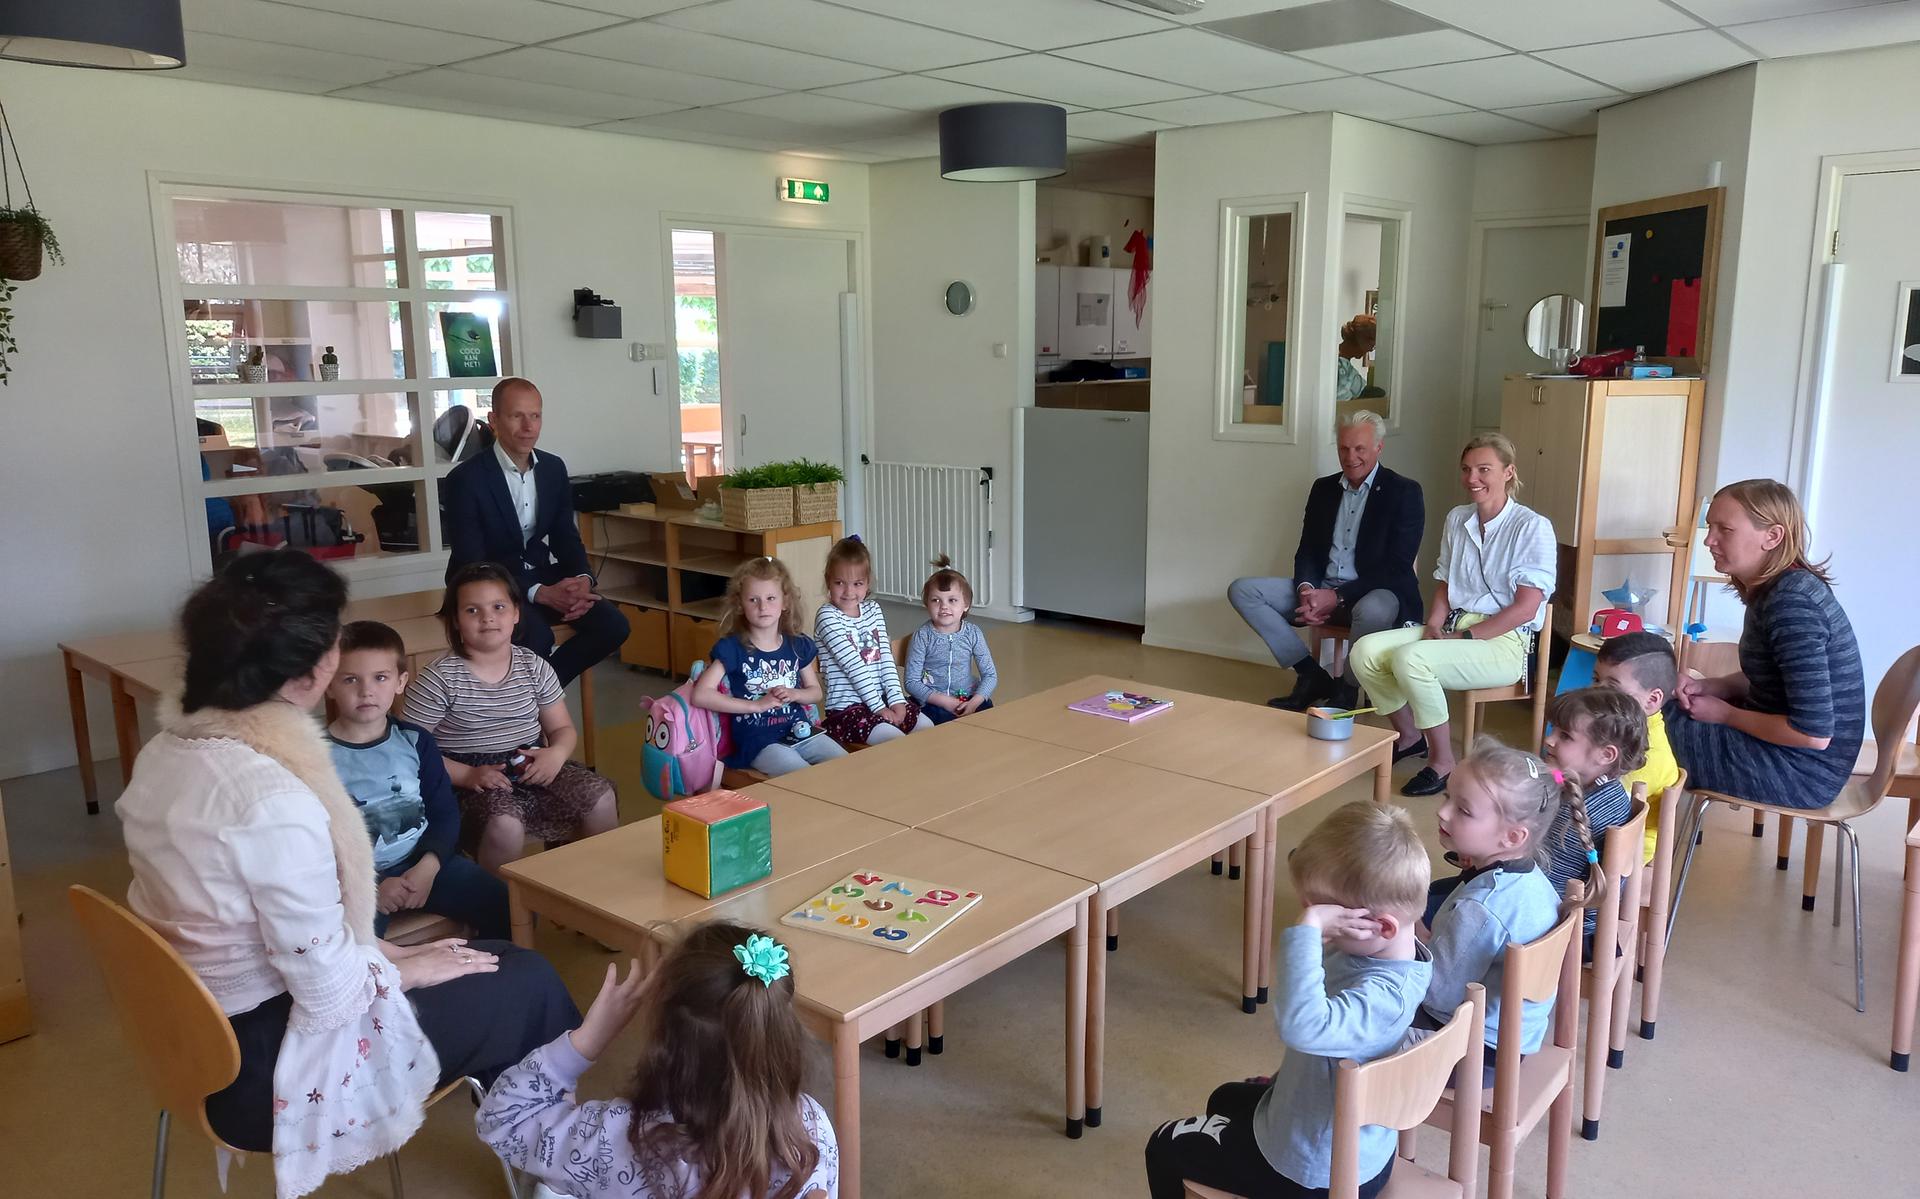 Wethouders Lucas Mulder en Herriët Brinkman brachten een bezoekje aan het basisonderwijs voor Oekraïense vluchtelingen in Staphorst.